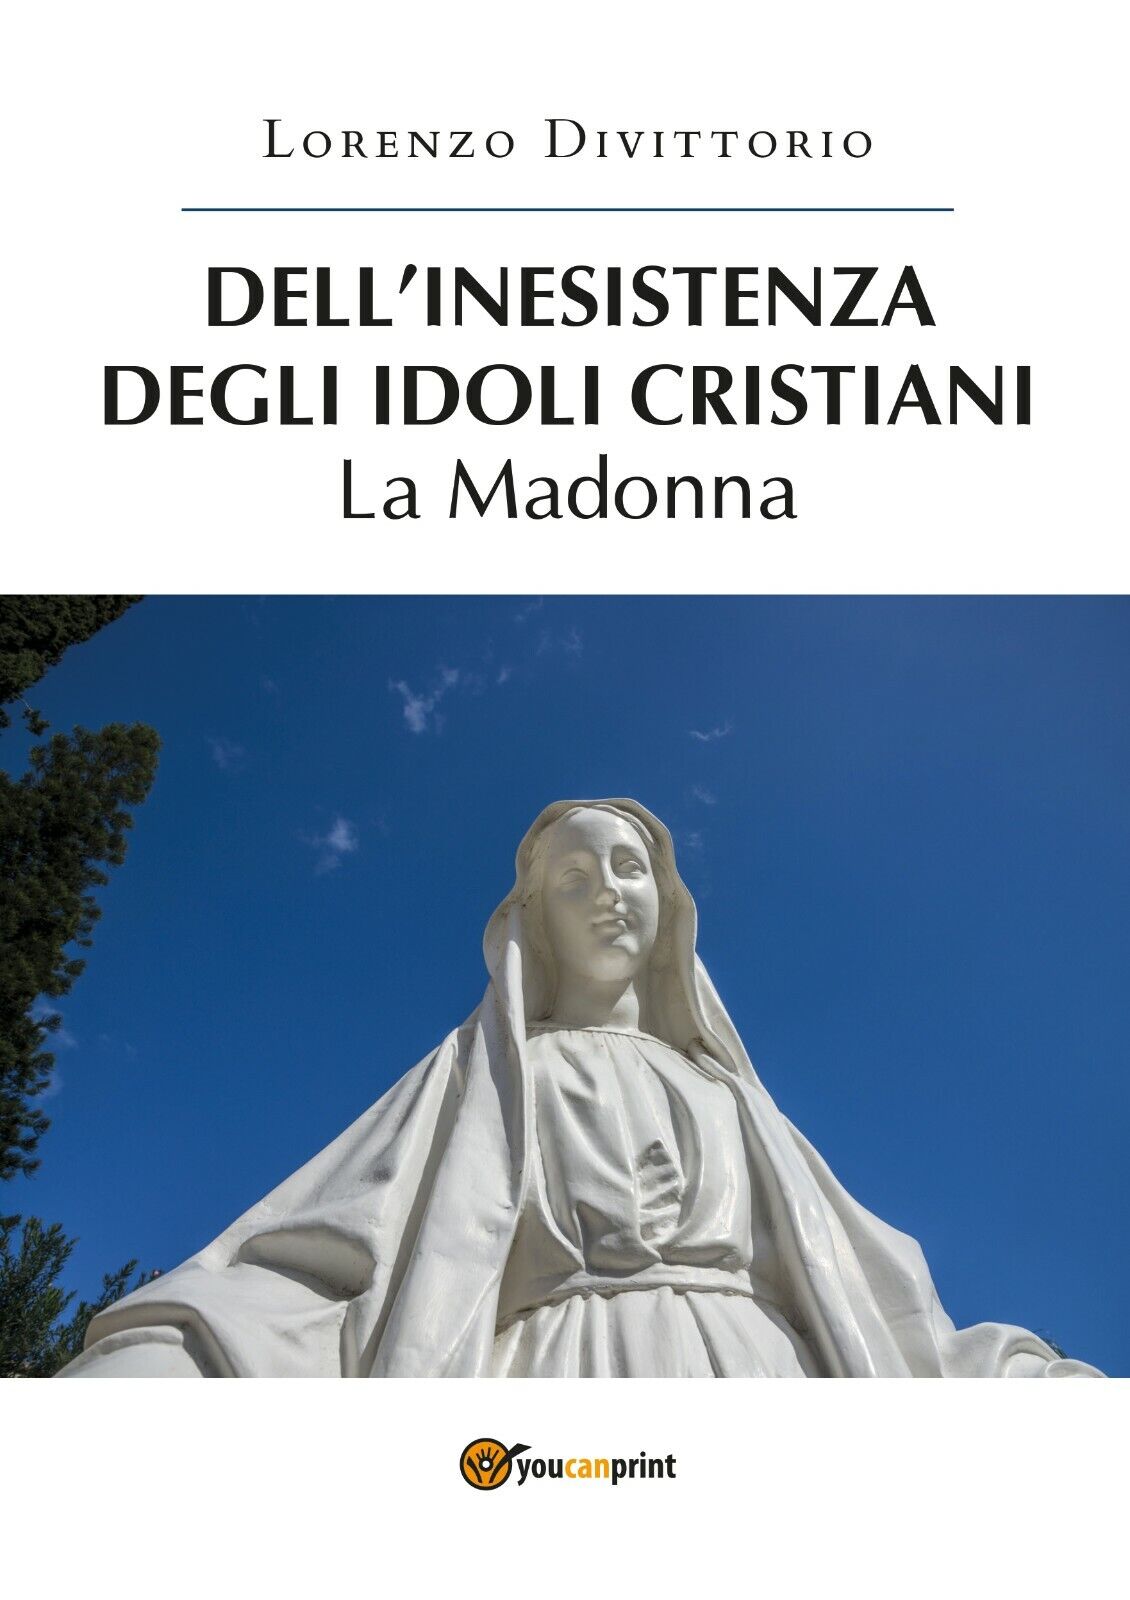 DelL'inesistenza degli idoli cristiani: la Madonna  di Lorenzo Divittorio,  2019 libro usato